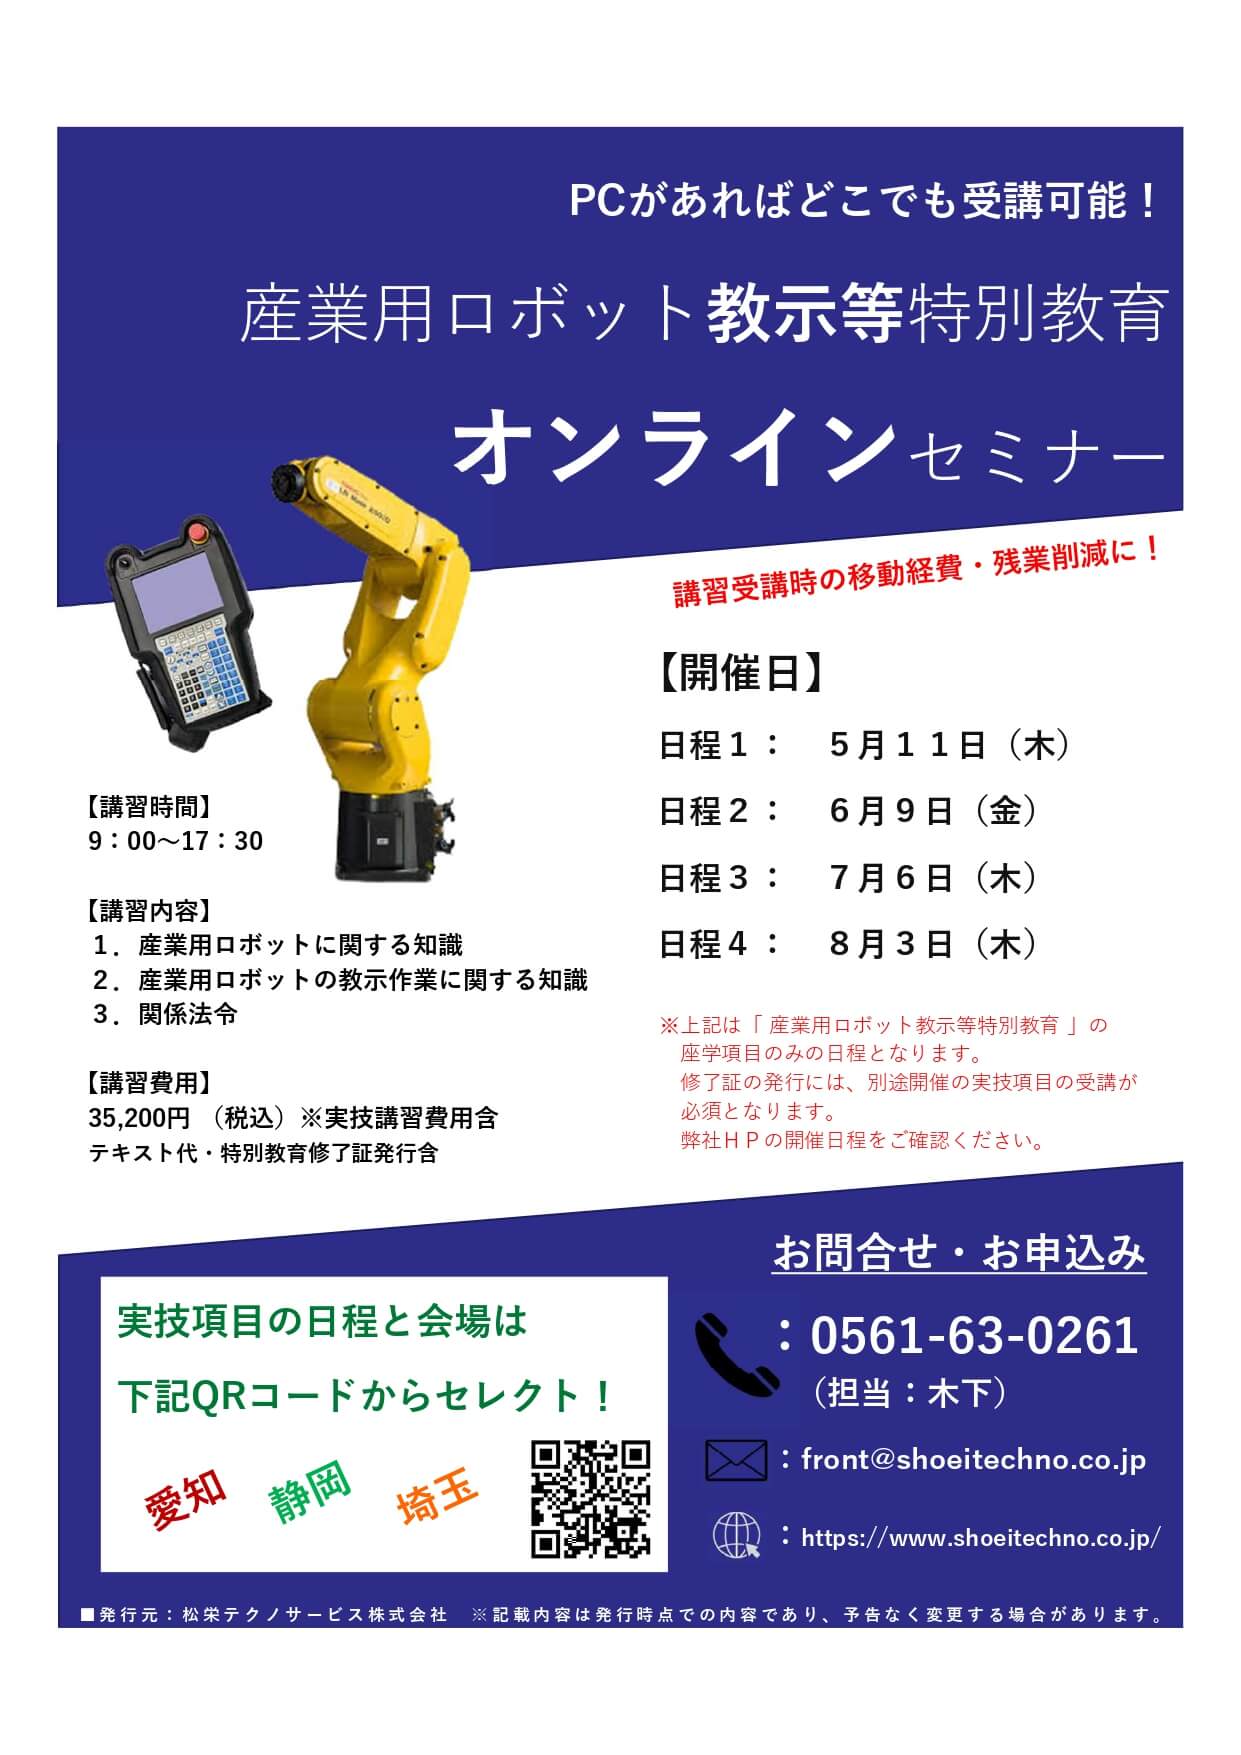 【受付中】産業用ロボット 教示等 特別教育 オンラインセミナー開催のお知らせ